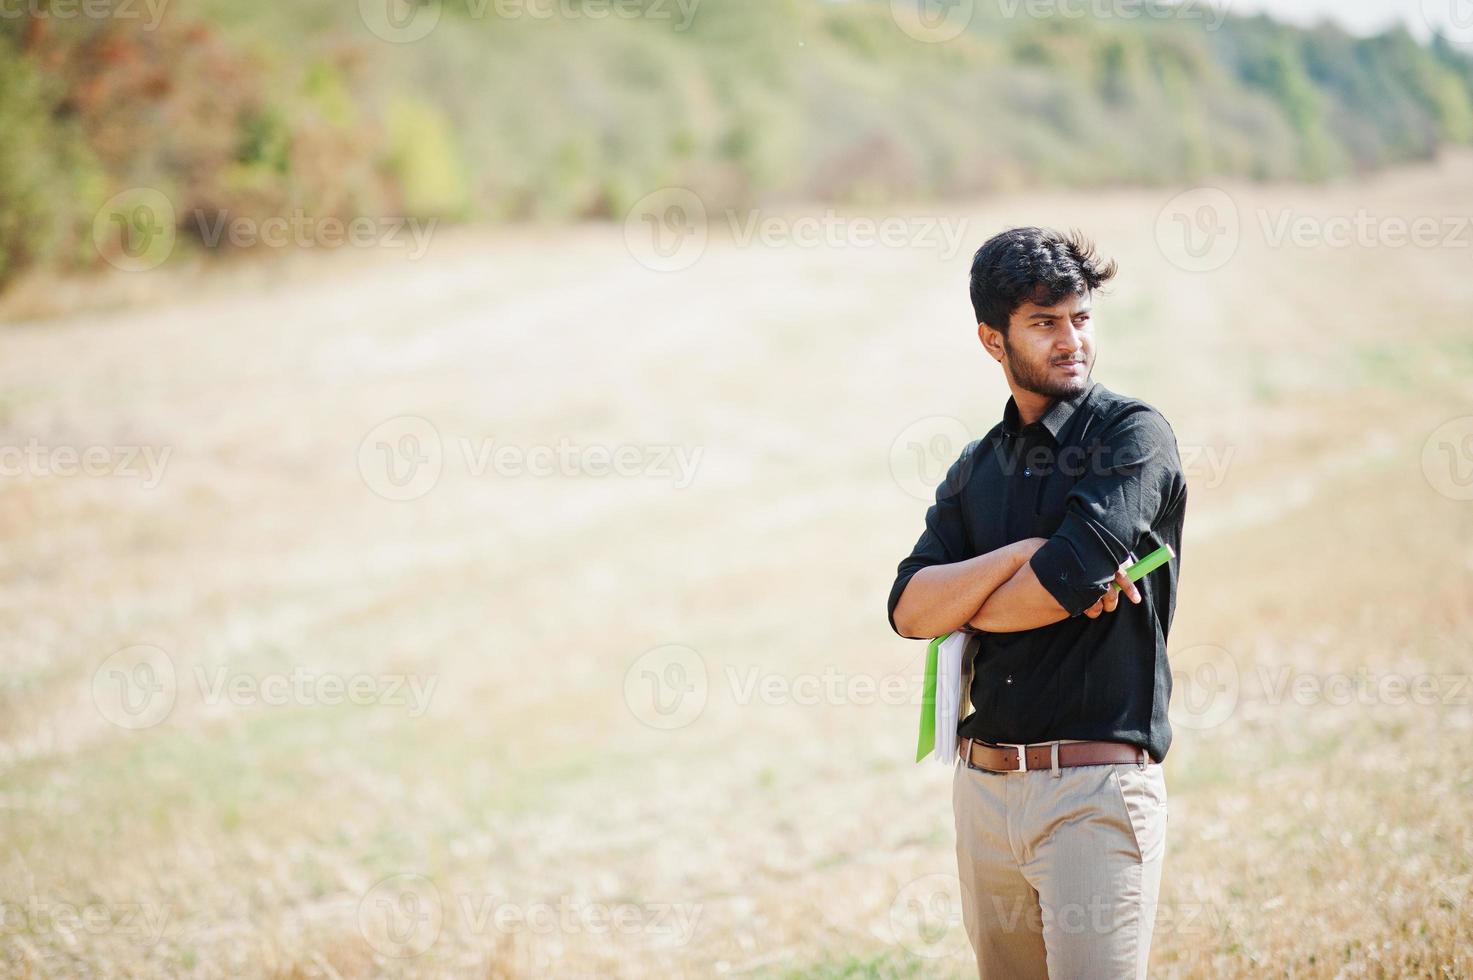 agricultor agrônomo do sul da Ásia inspecionando a fazenda de campo de trigo. conceito de produção agrícola. foto